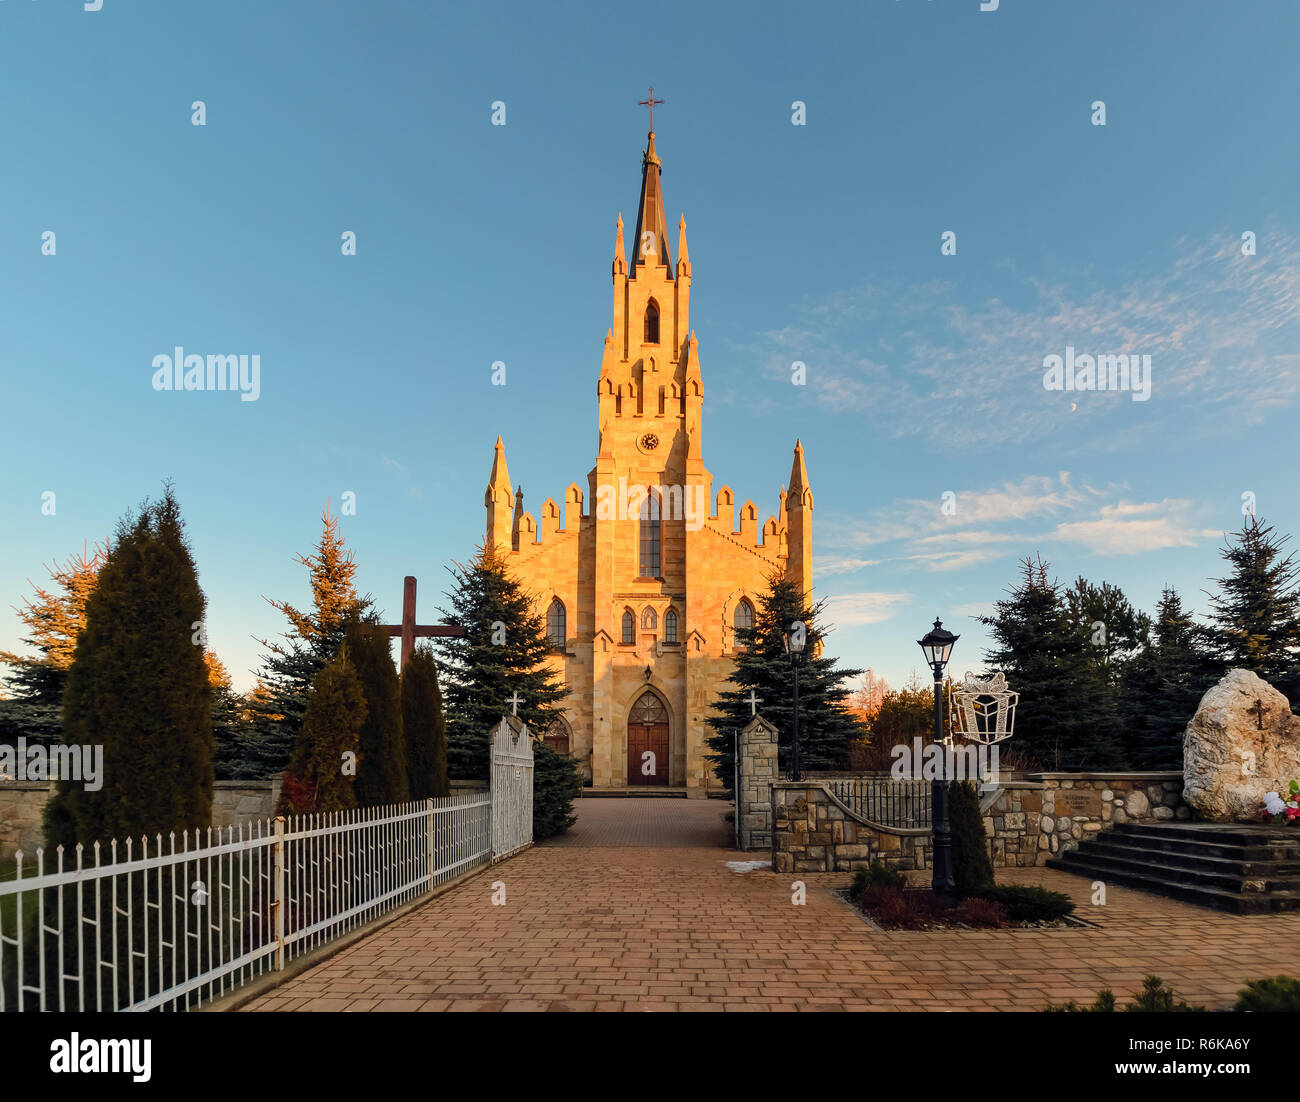 Gotische Hl. Jacek steinerne Kirche in Chocholow, Polen, nach Sonnenuntergang. Stockfoto